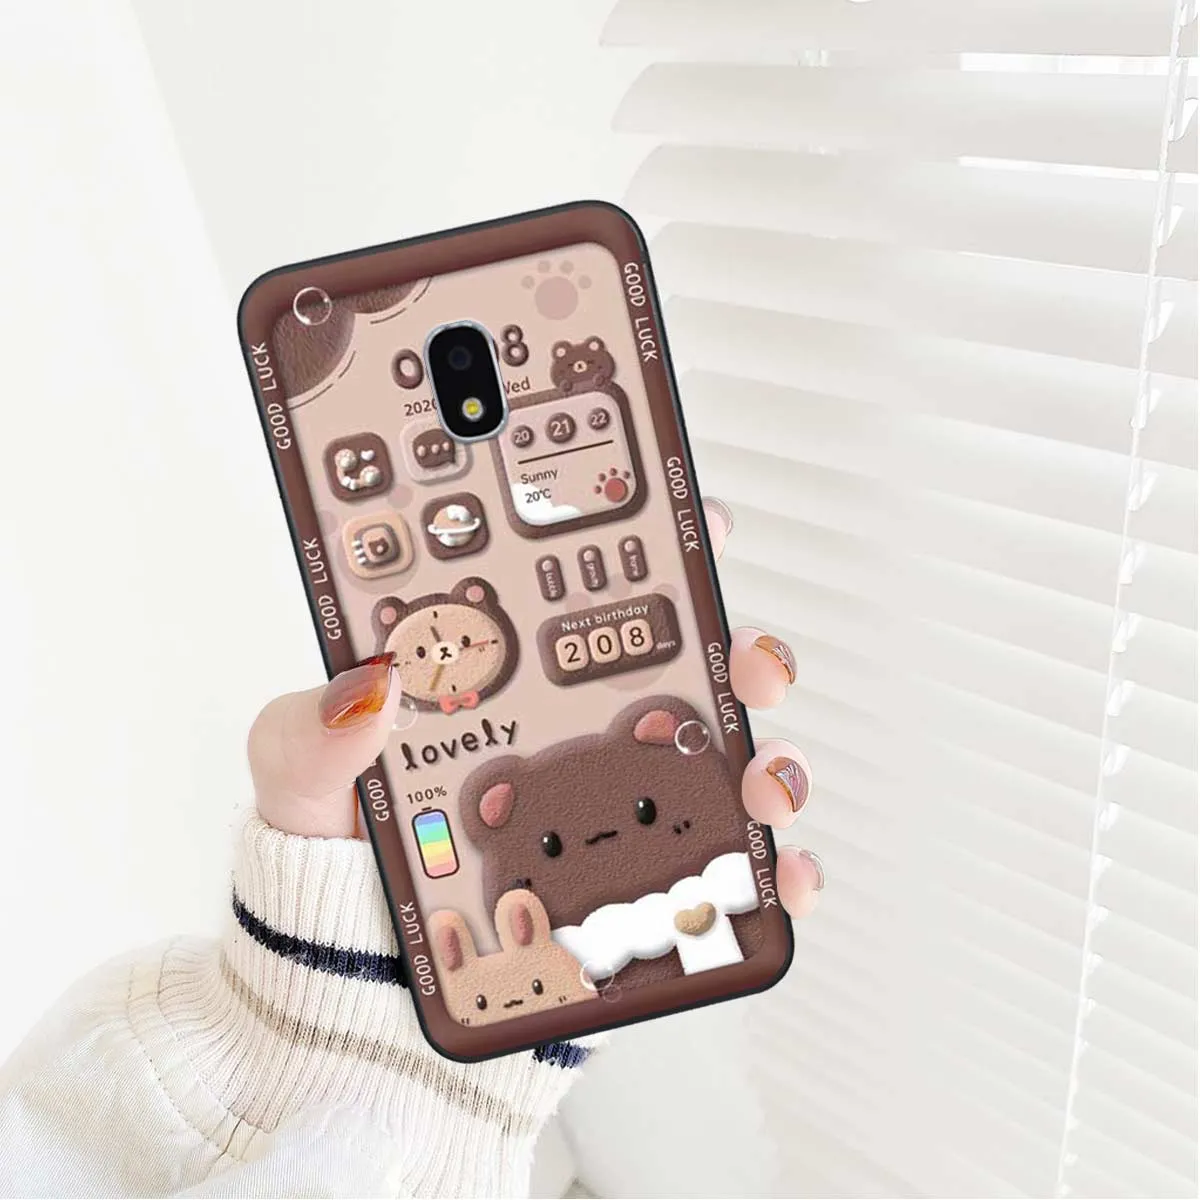 Ốp lưng điện thoại Samsung J7 Pro hình nền gấu nâu xinh cute, đồng ...